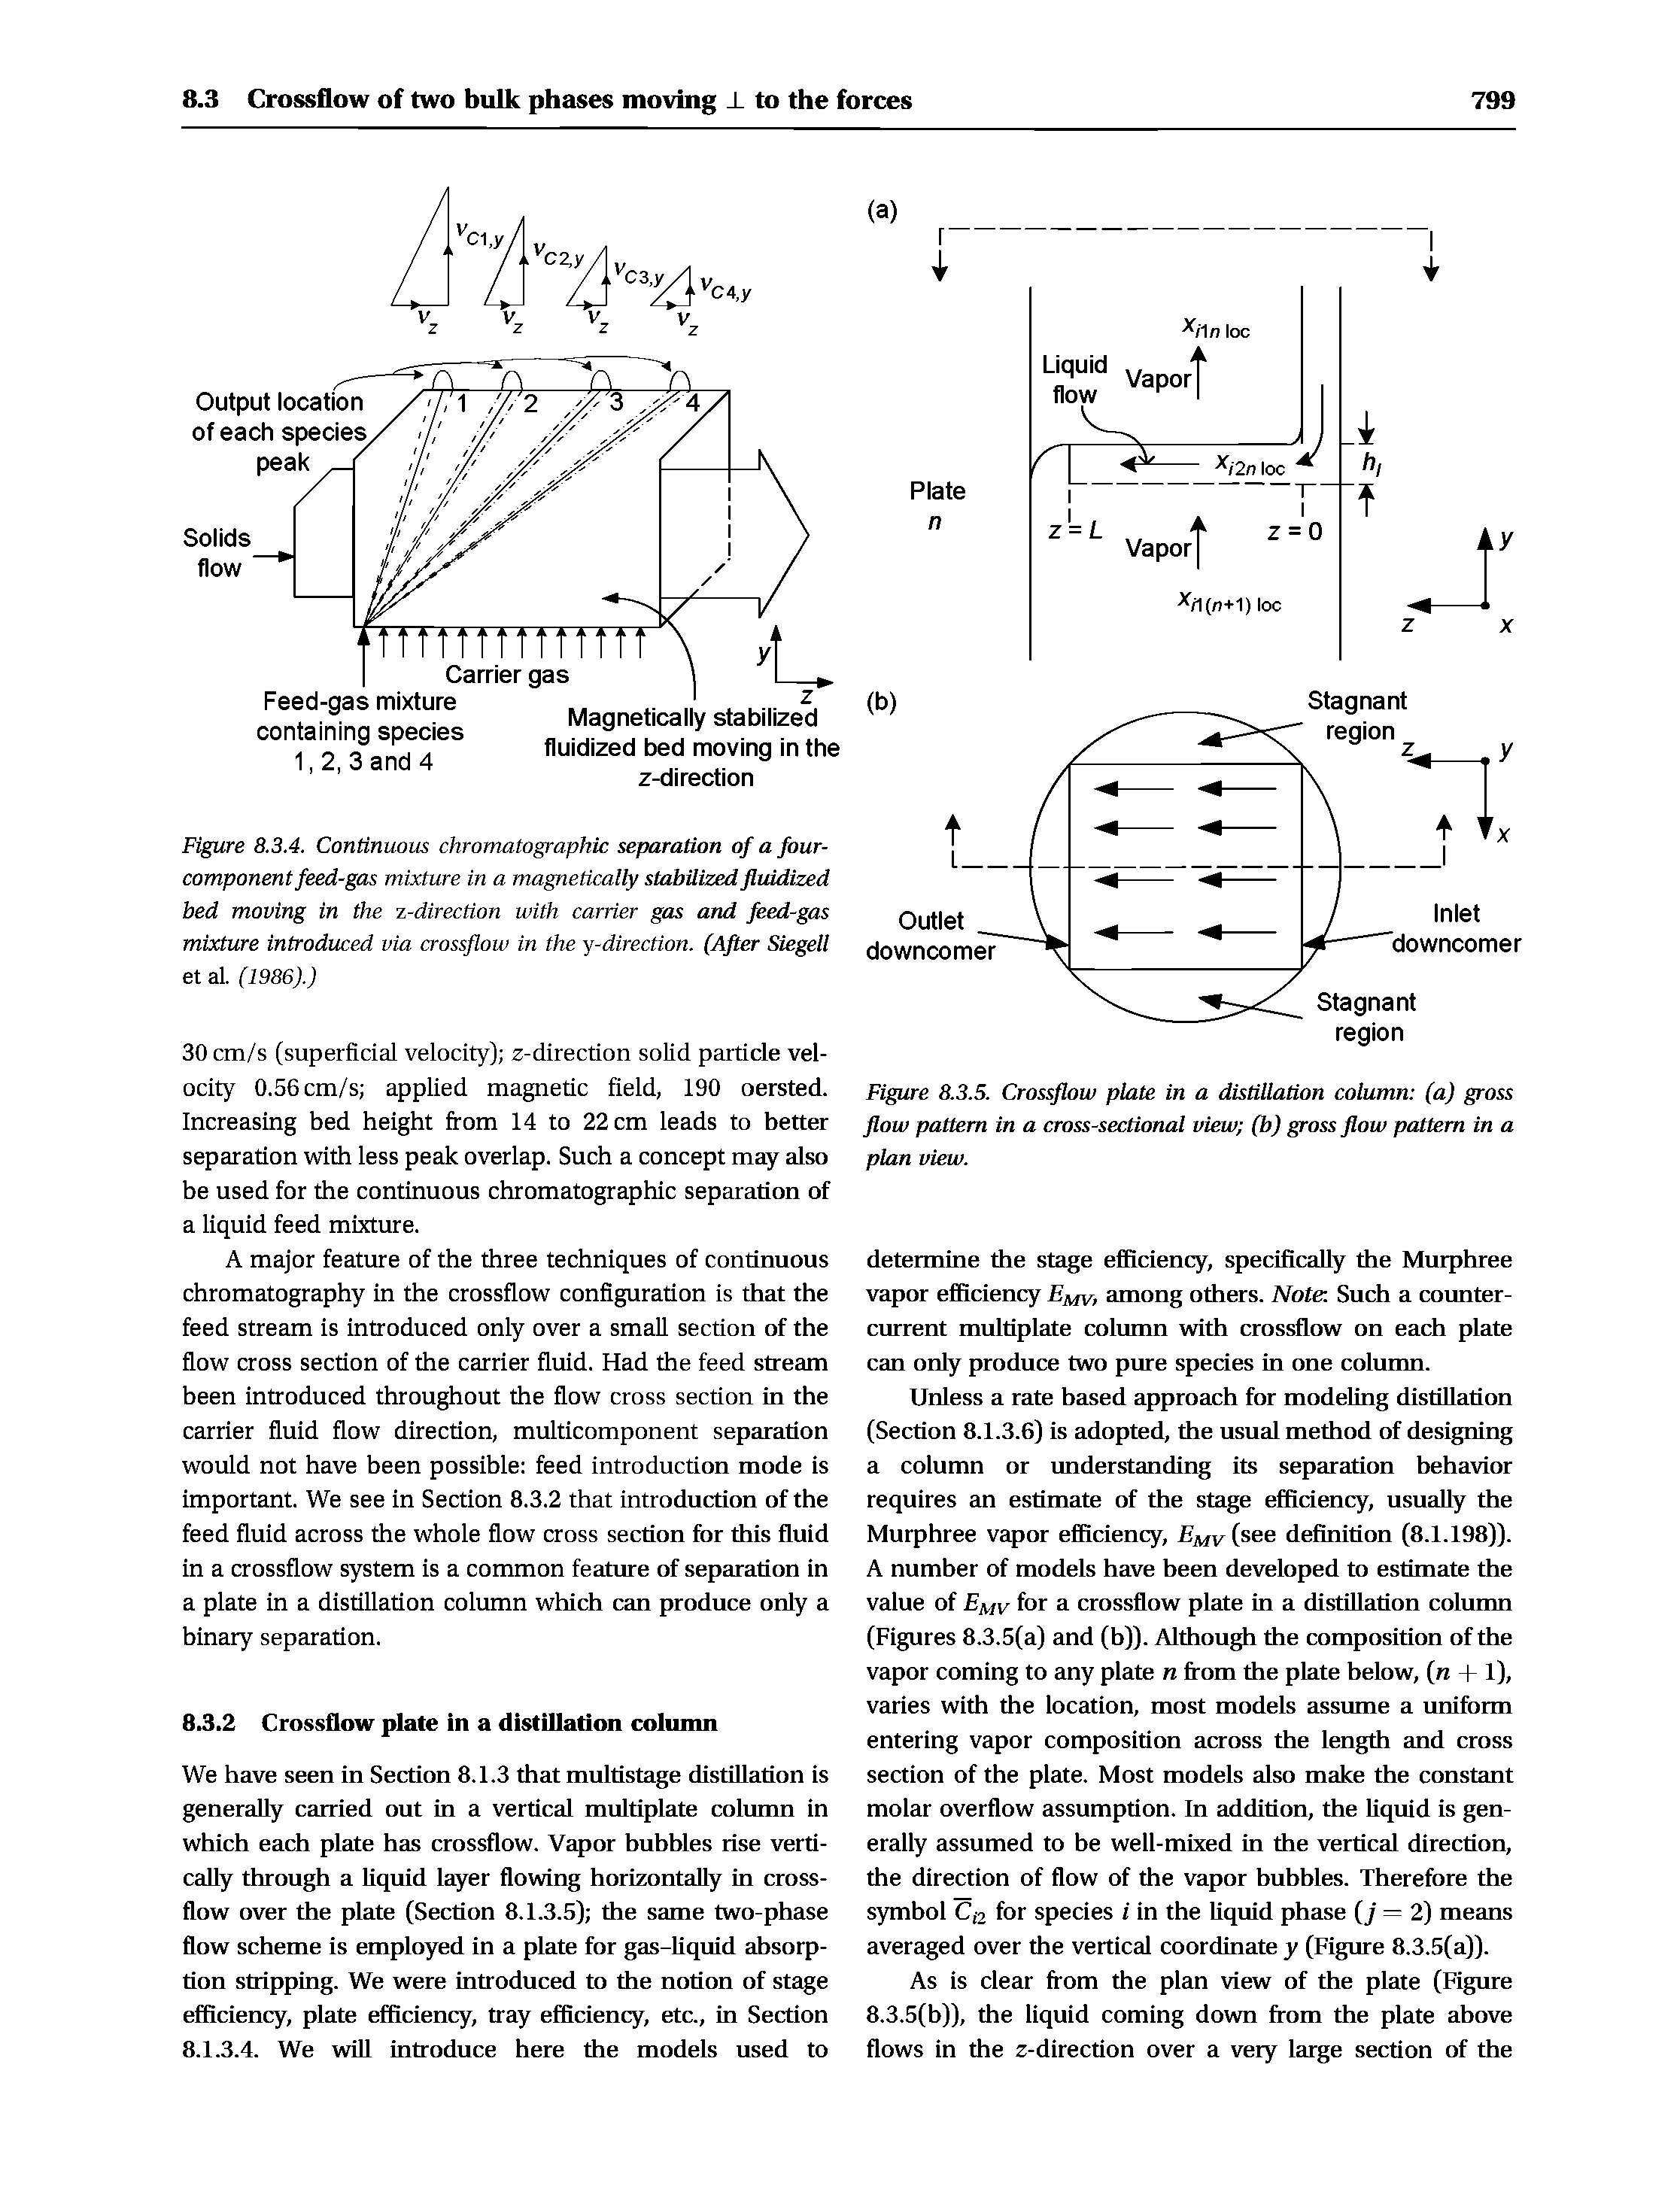 Figure 8.3.5. Crossflow plate in a distillation column (a) gross flow pattern in a cross-sectional view (b) gross flow pattern in a plan view.